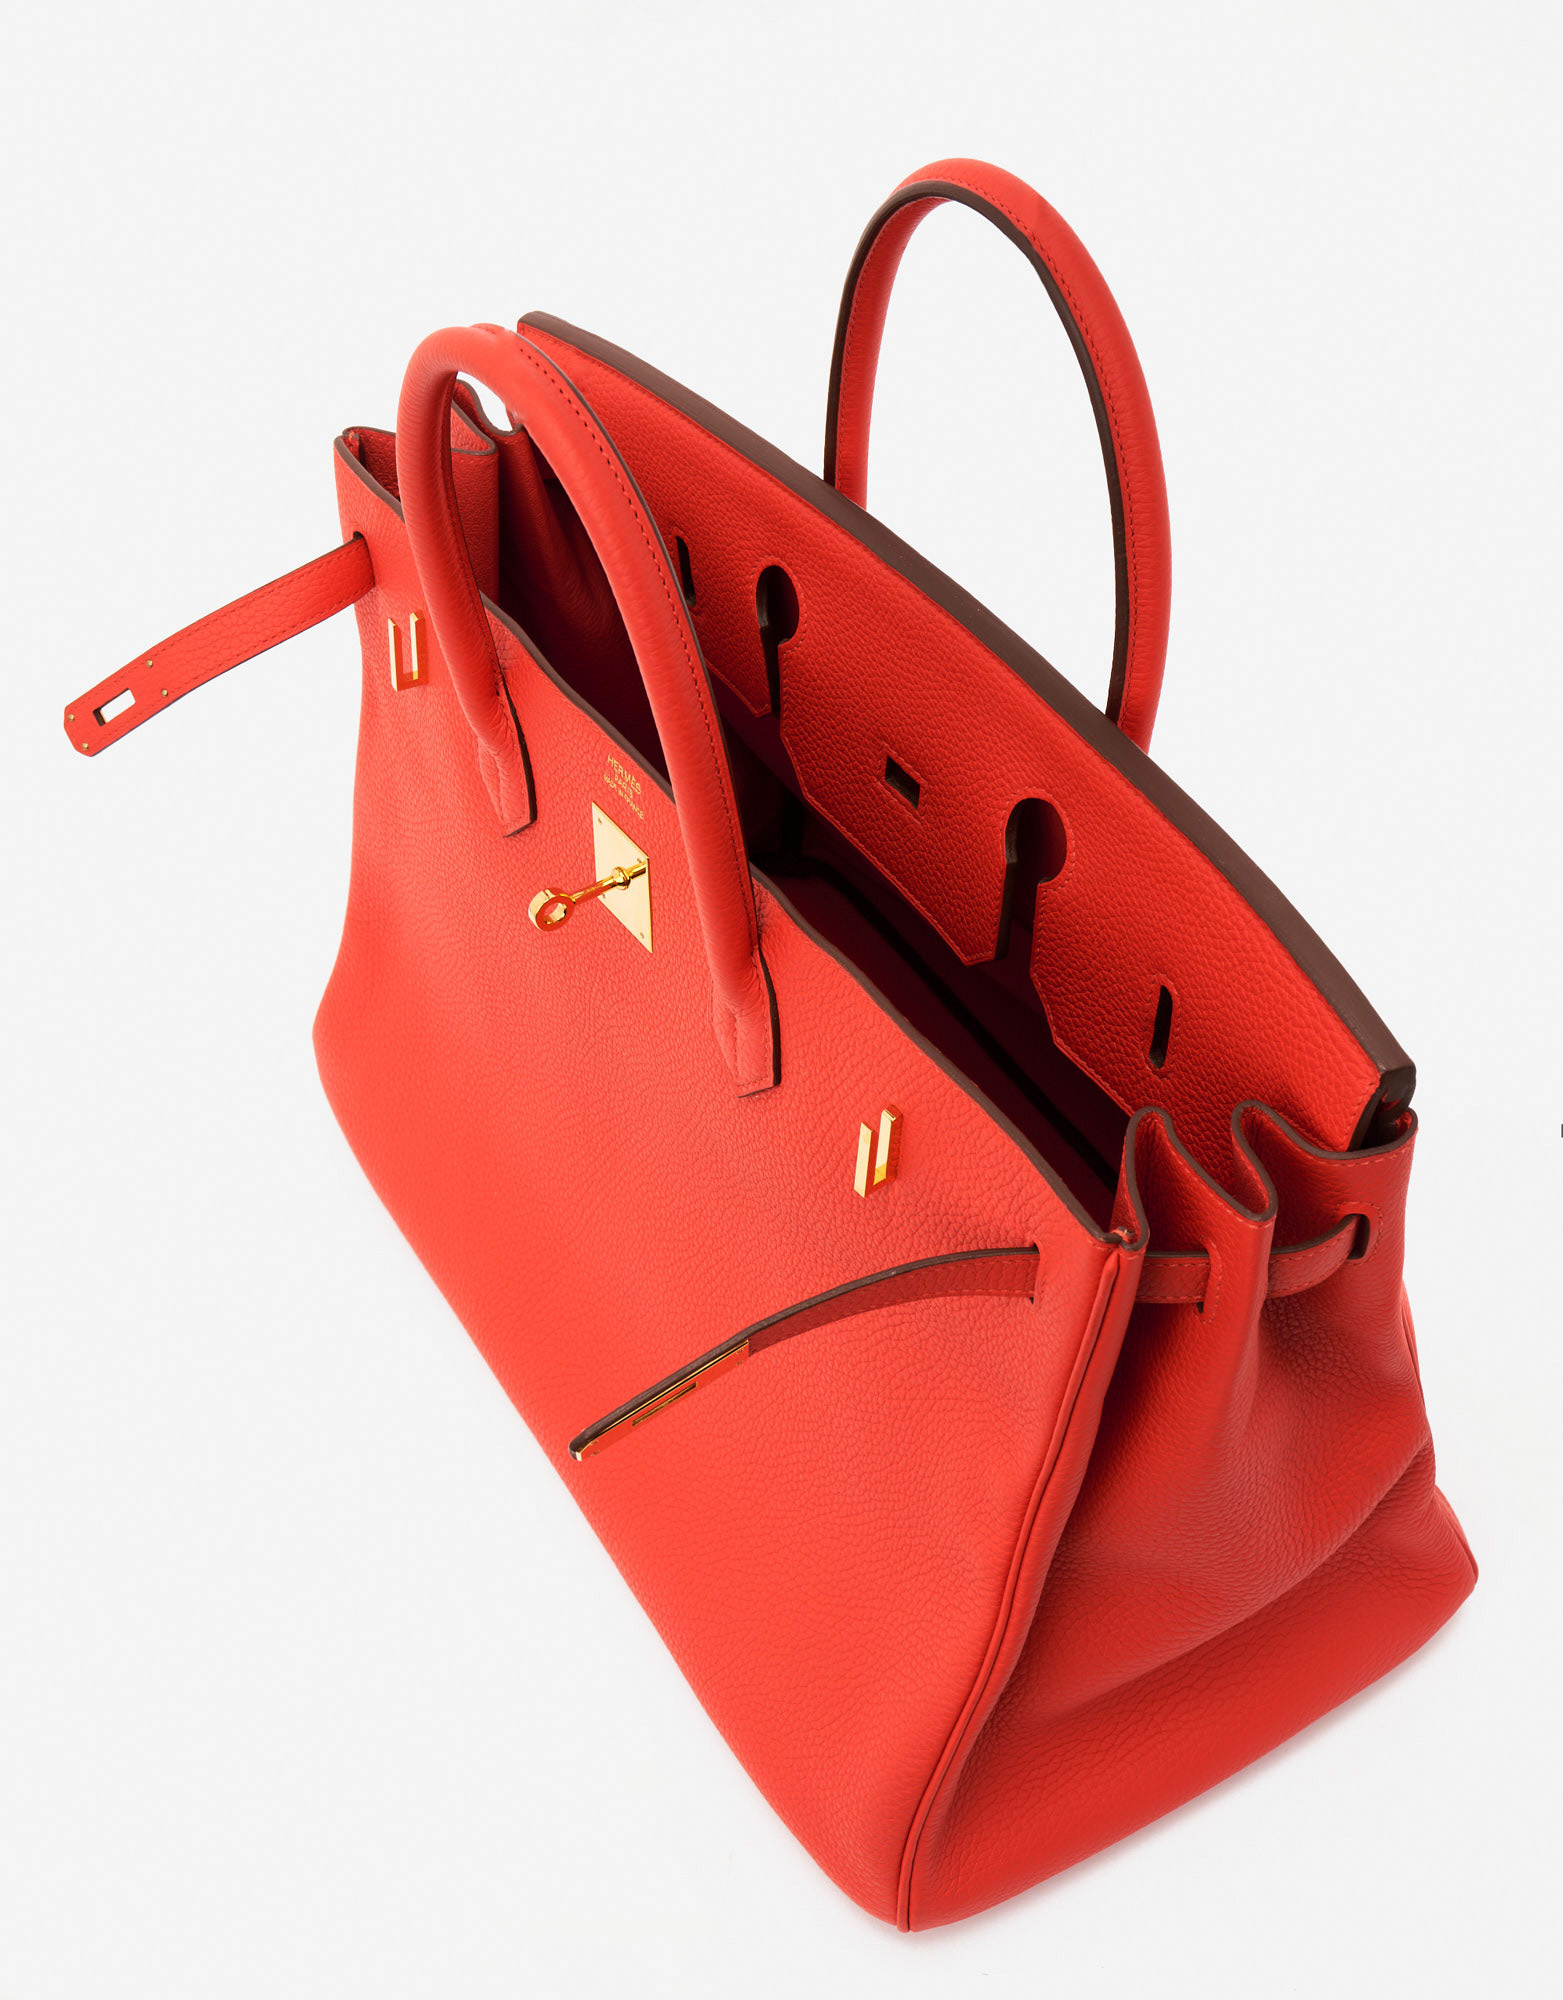 Sac Hermès Birkin 40 Togo Rouge Tomate Red d'occasion Vendre votre sac de créateur sur Saclab.com